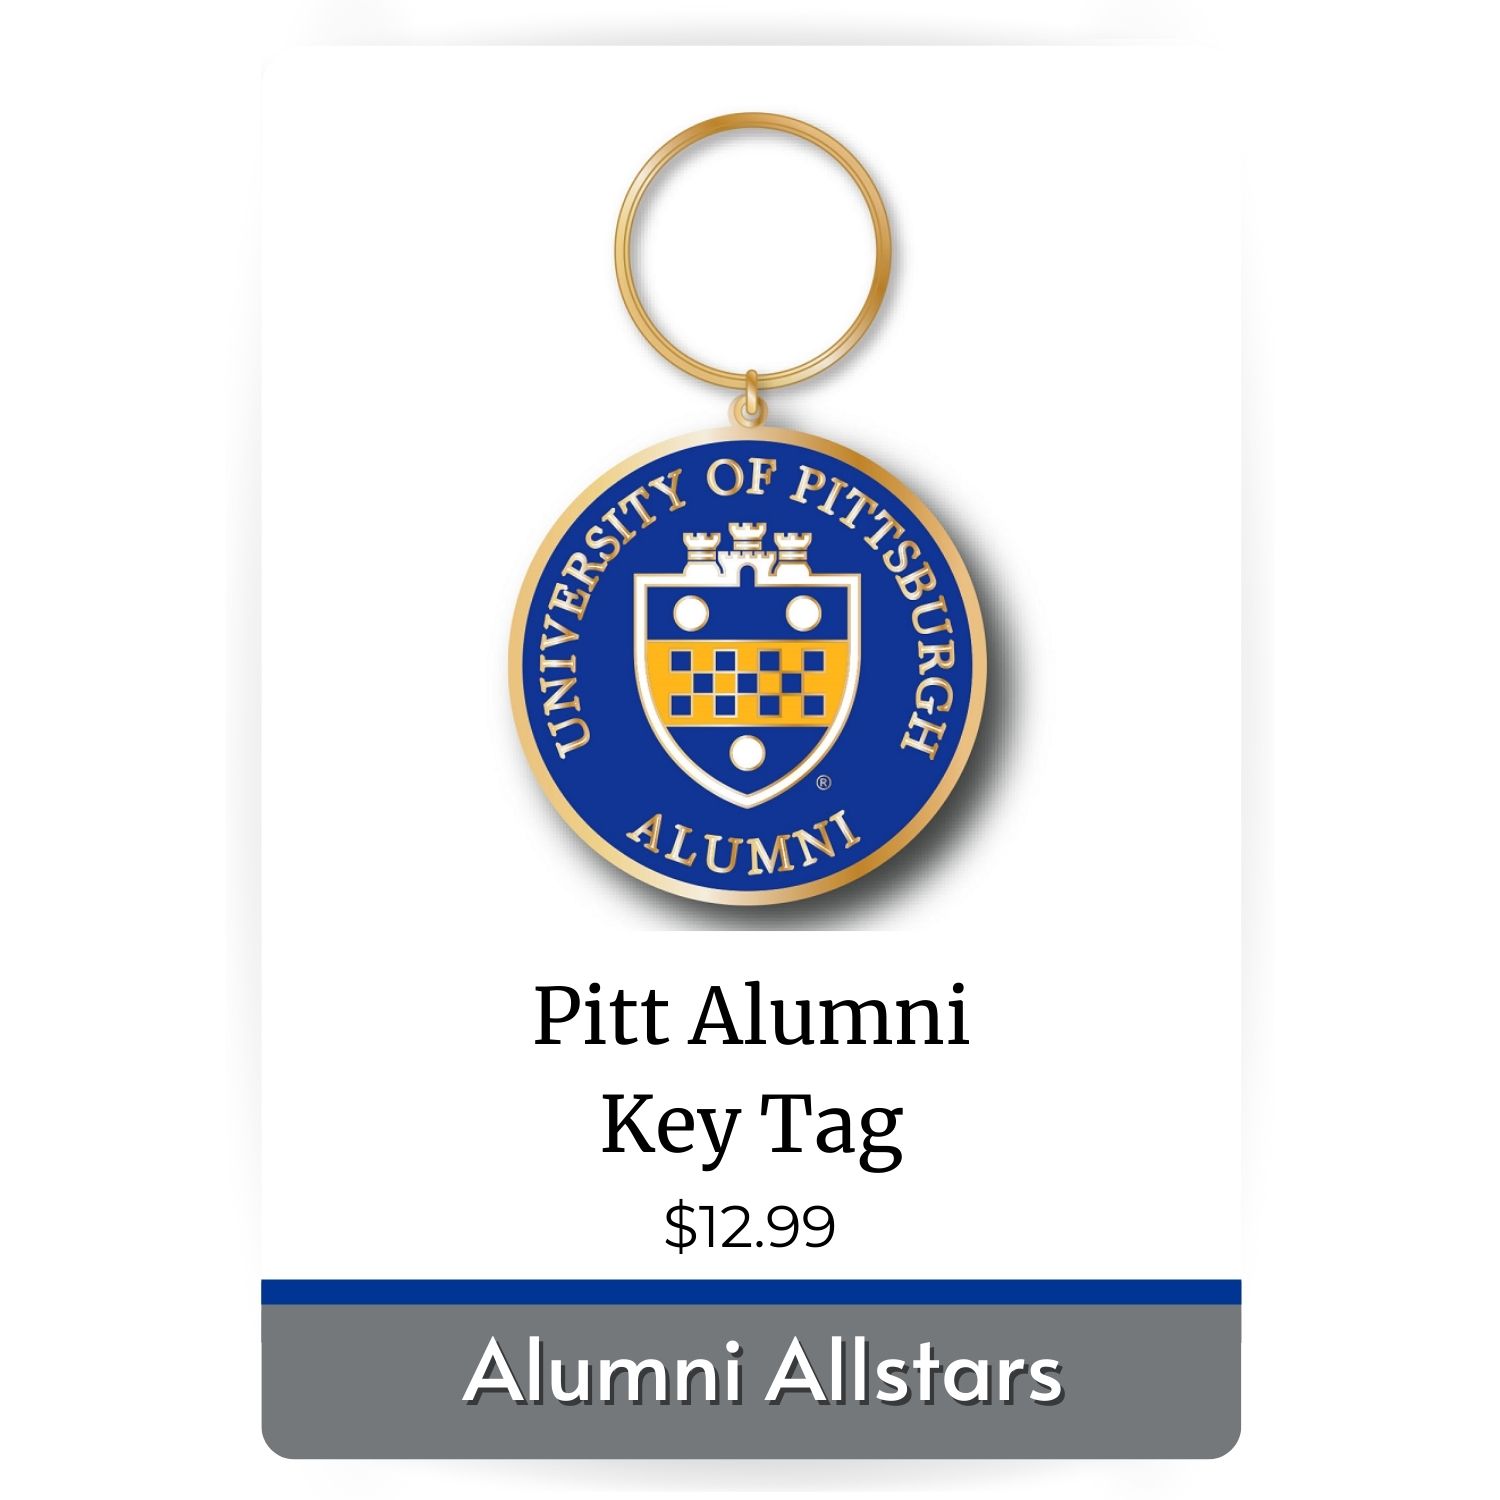 Pitt Alumni Keytag image